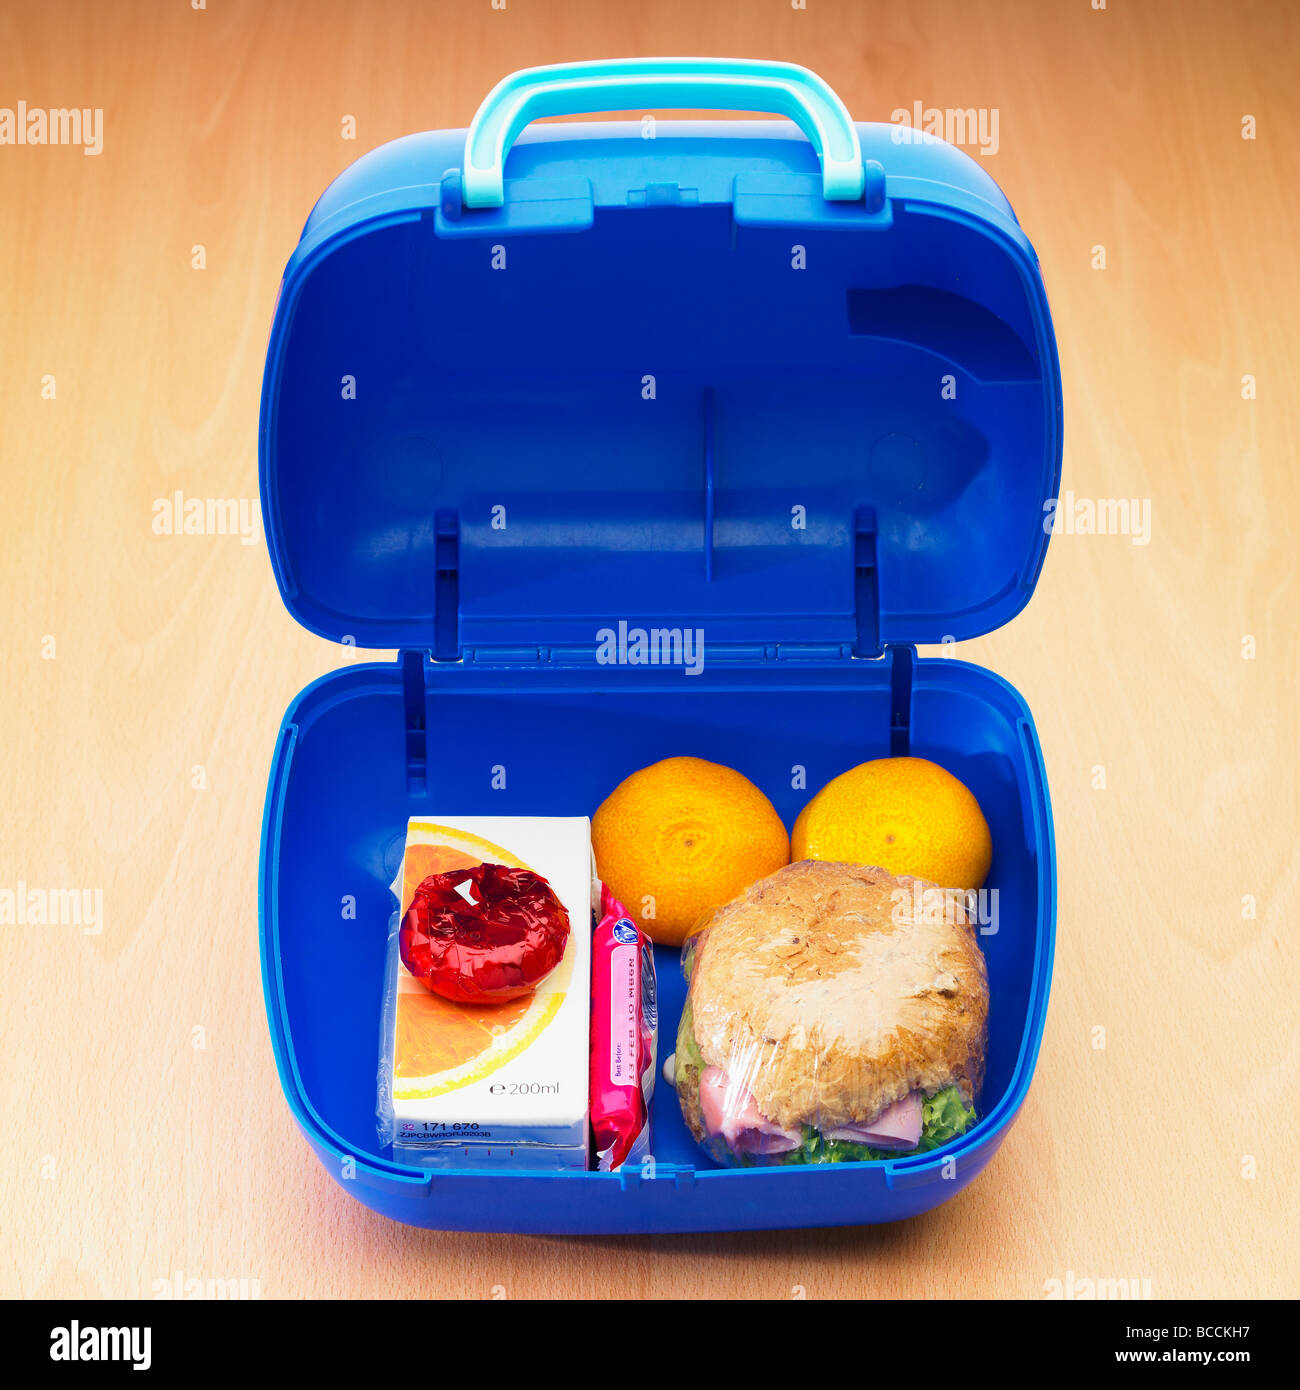 Eine Kinderschule gesunde Lunchbox / Lunchpaket mit Vollkornrolle, zwei Satsumas Obst, leichten Käse, Orangensaft und einem süßen Keks. Stockfoto